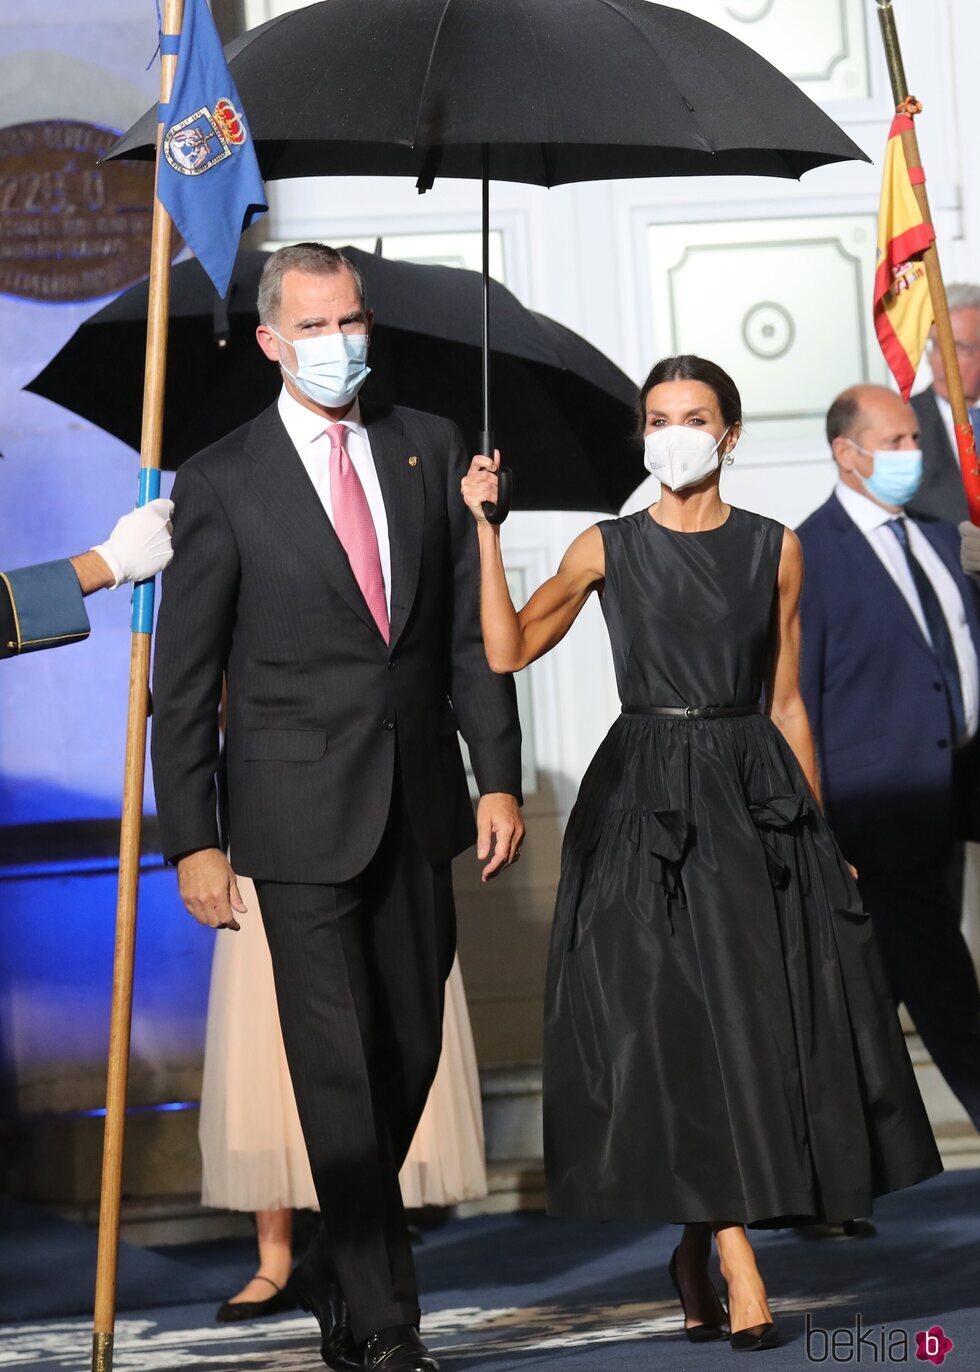 Los Reyes Felipe y Letizia tras la gala de los Premios Princesa de Asturias 2021